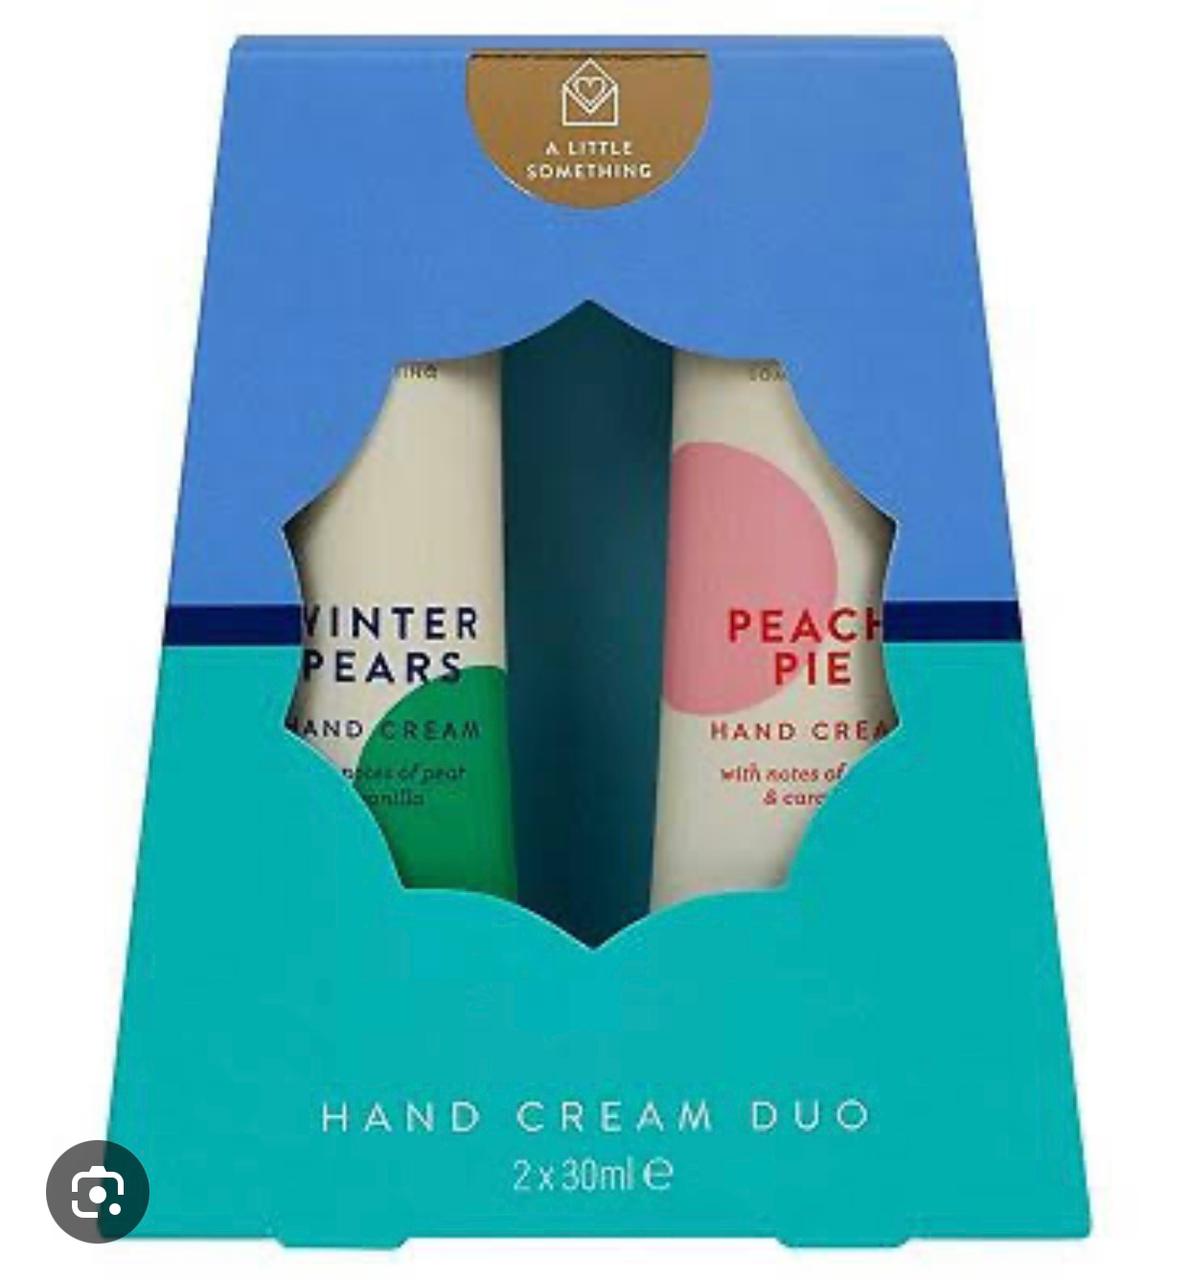 Hand cream DUO